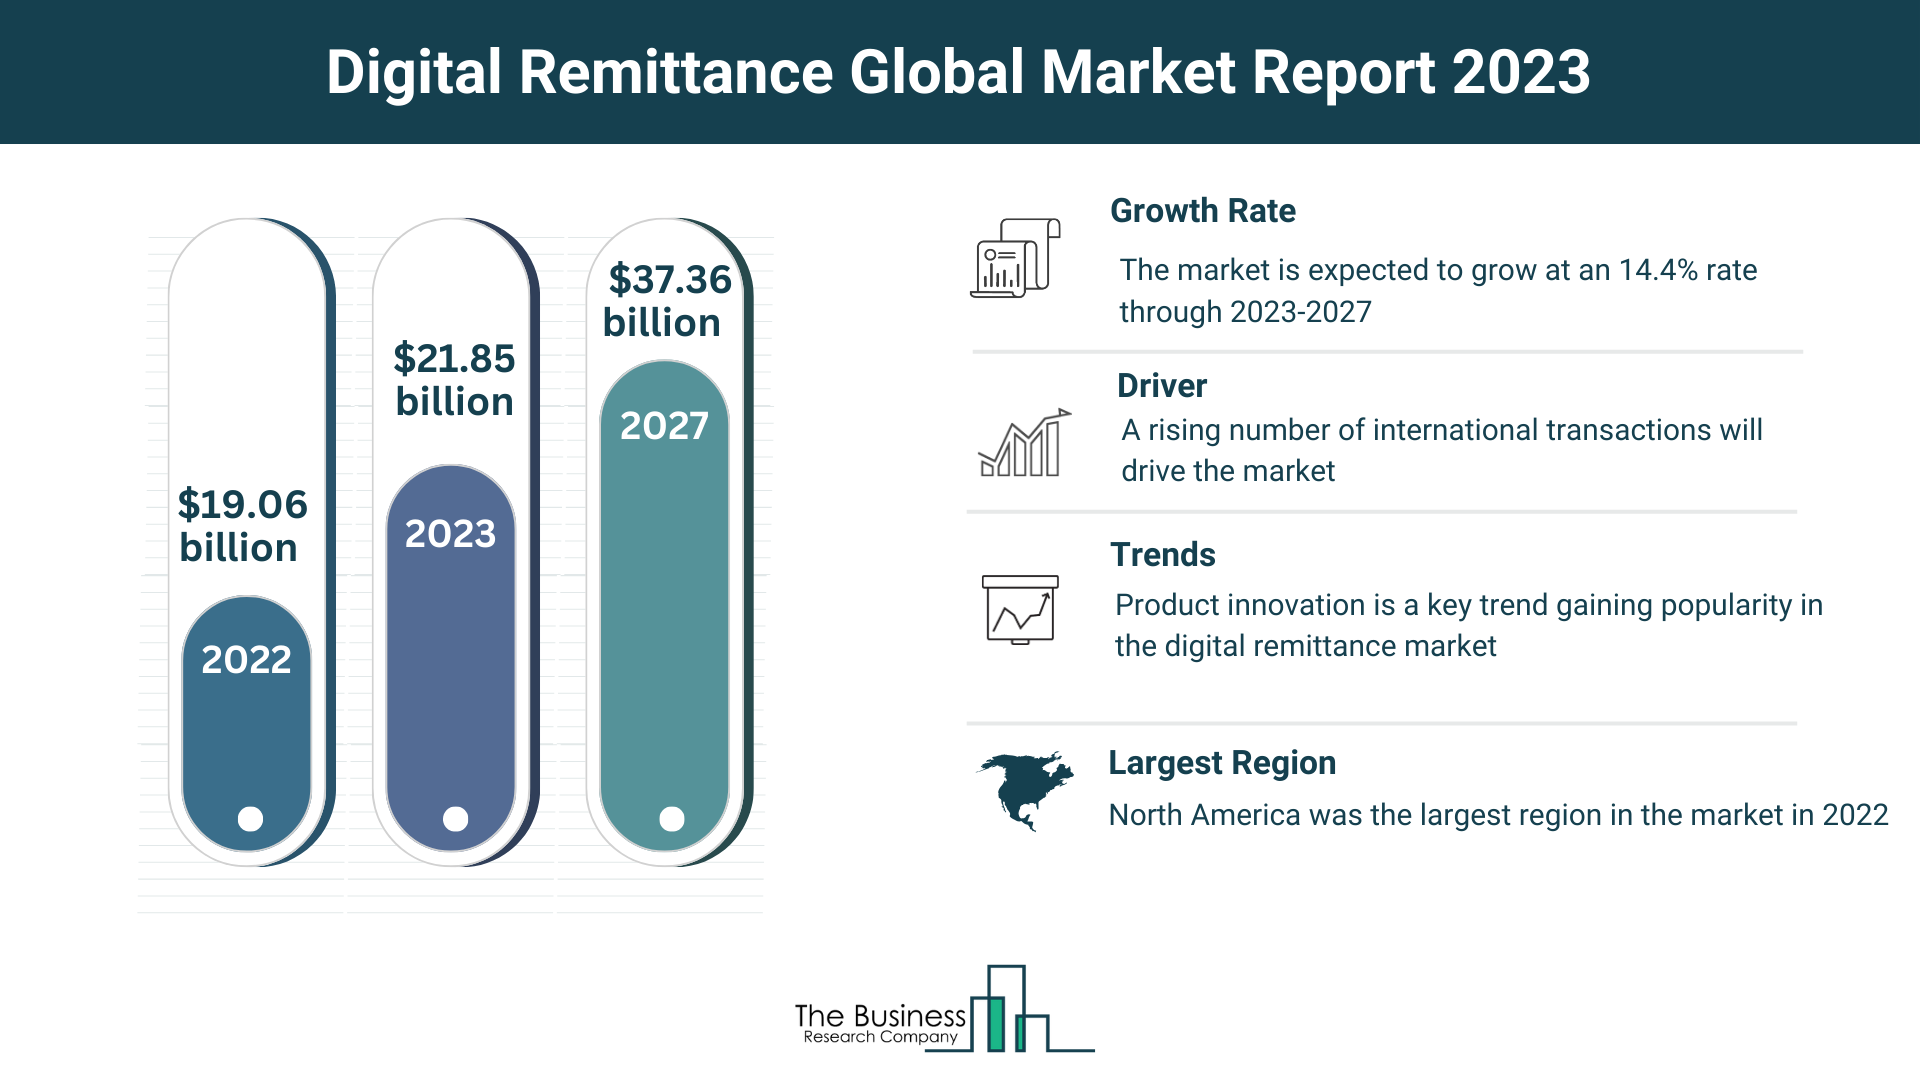 Global Digital Remittance Market